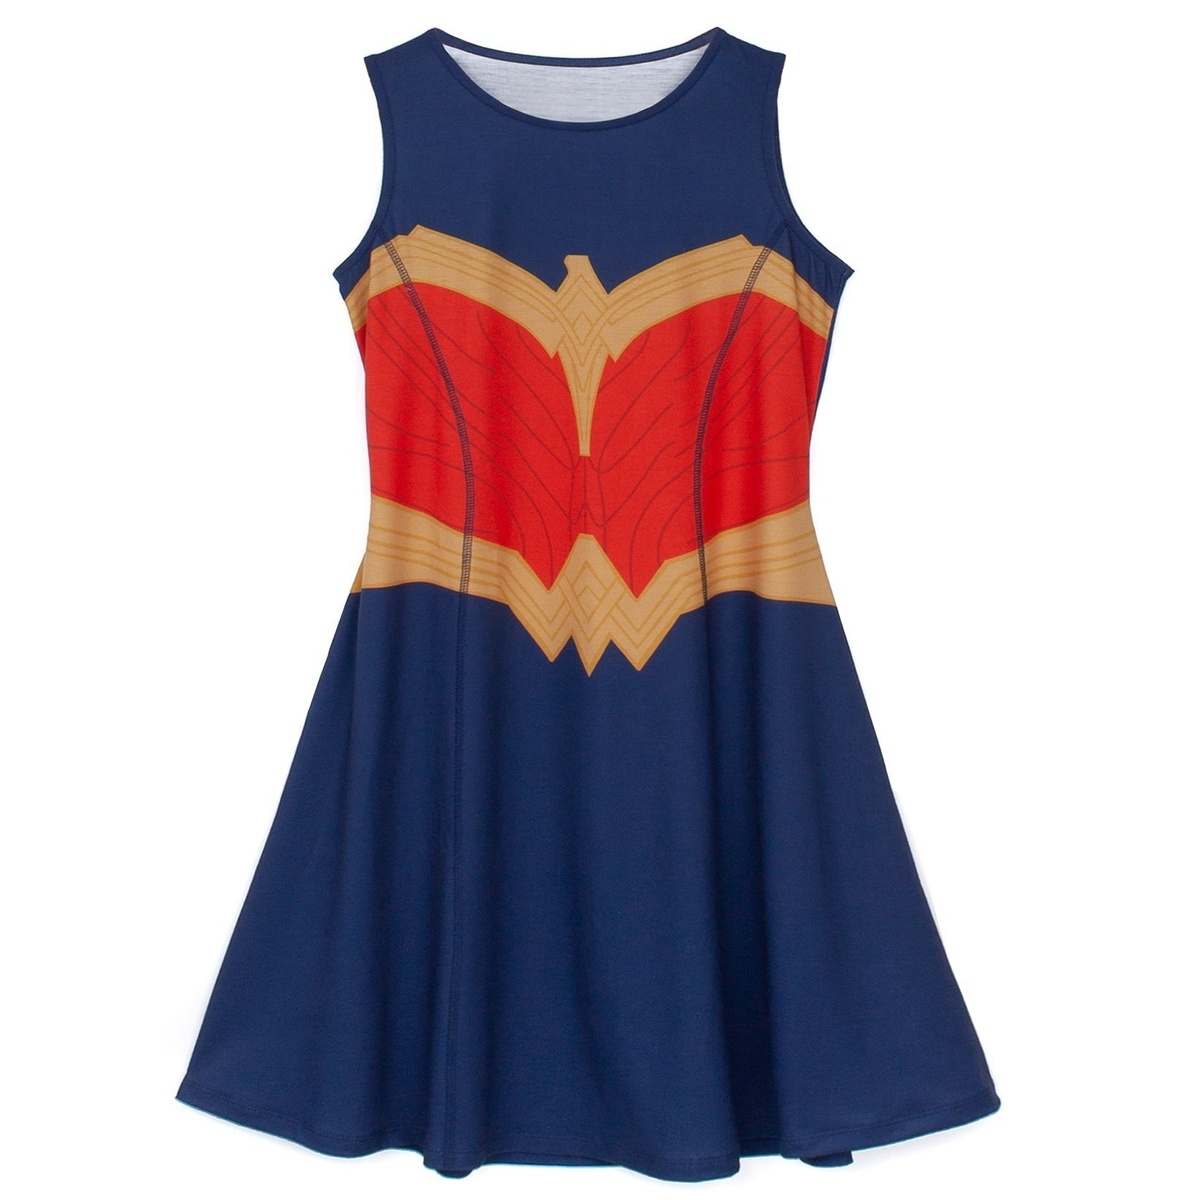 (ワンダーウーマン) Wonder Woman オフィシャル商品 キッズ・子供 ガールズ コスチュームドレス 袖なし Tシャツドレス 【海外通販】画像